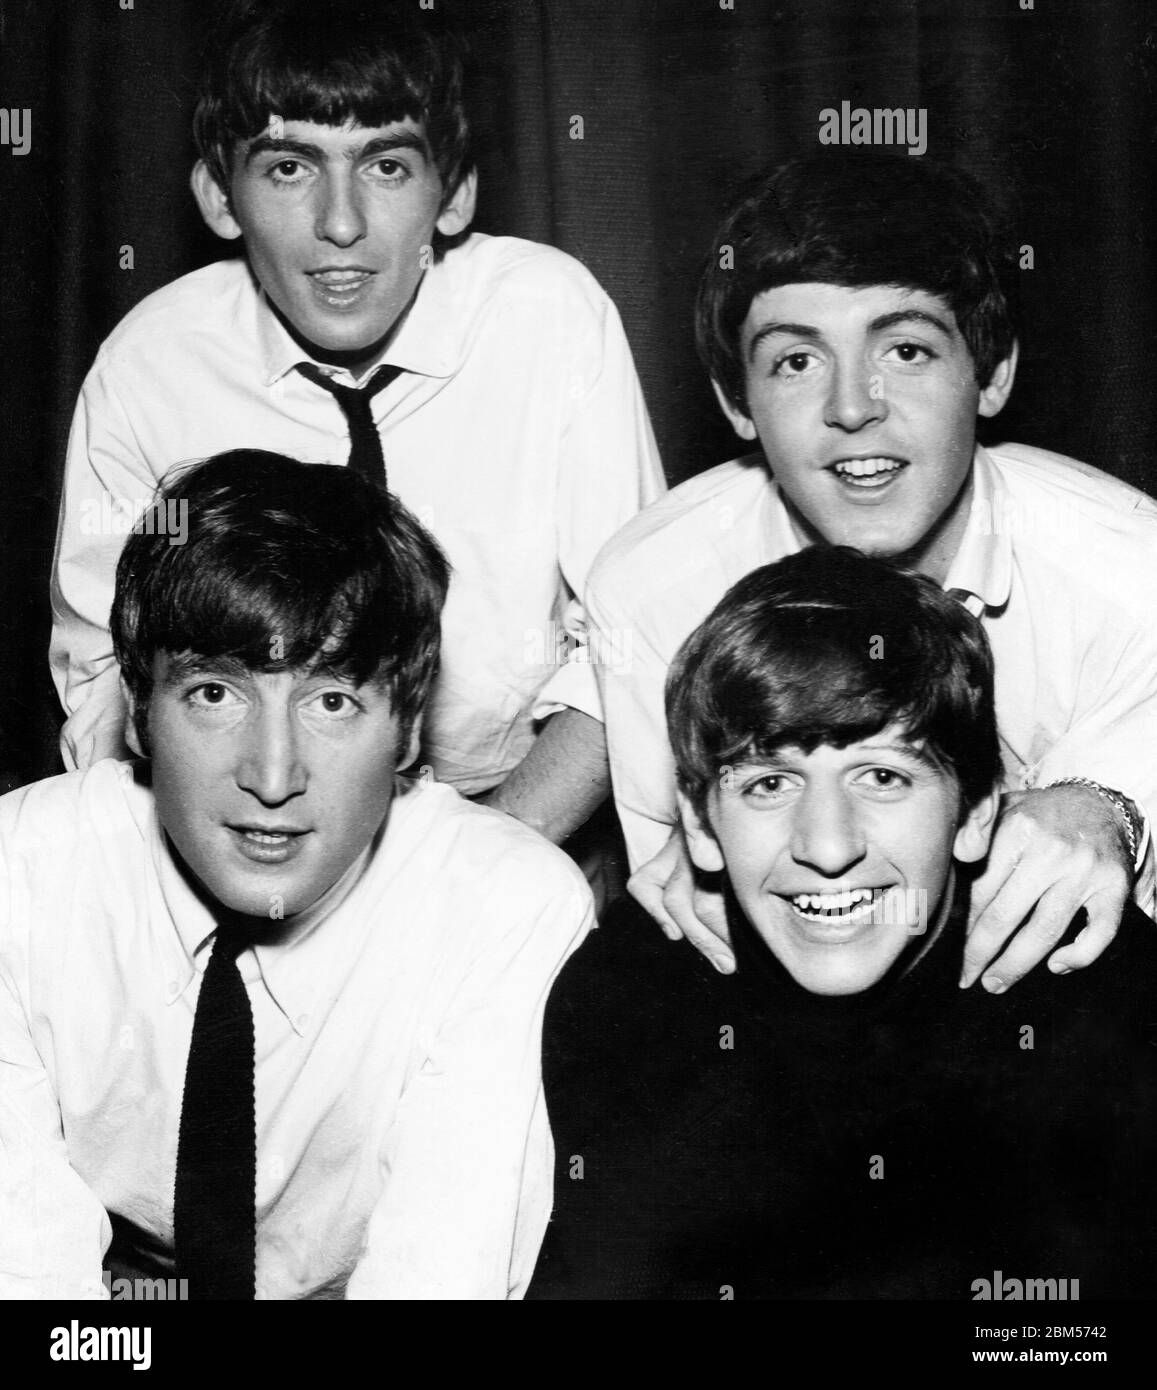 The Beatles - Studio Foto scansionata da una fotografia originale risalente agli anni '60. Fotografo sconosciuto. Foto Stock